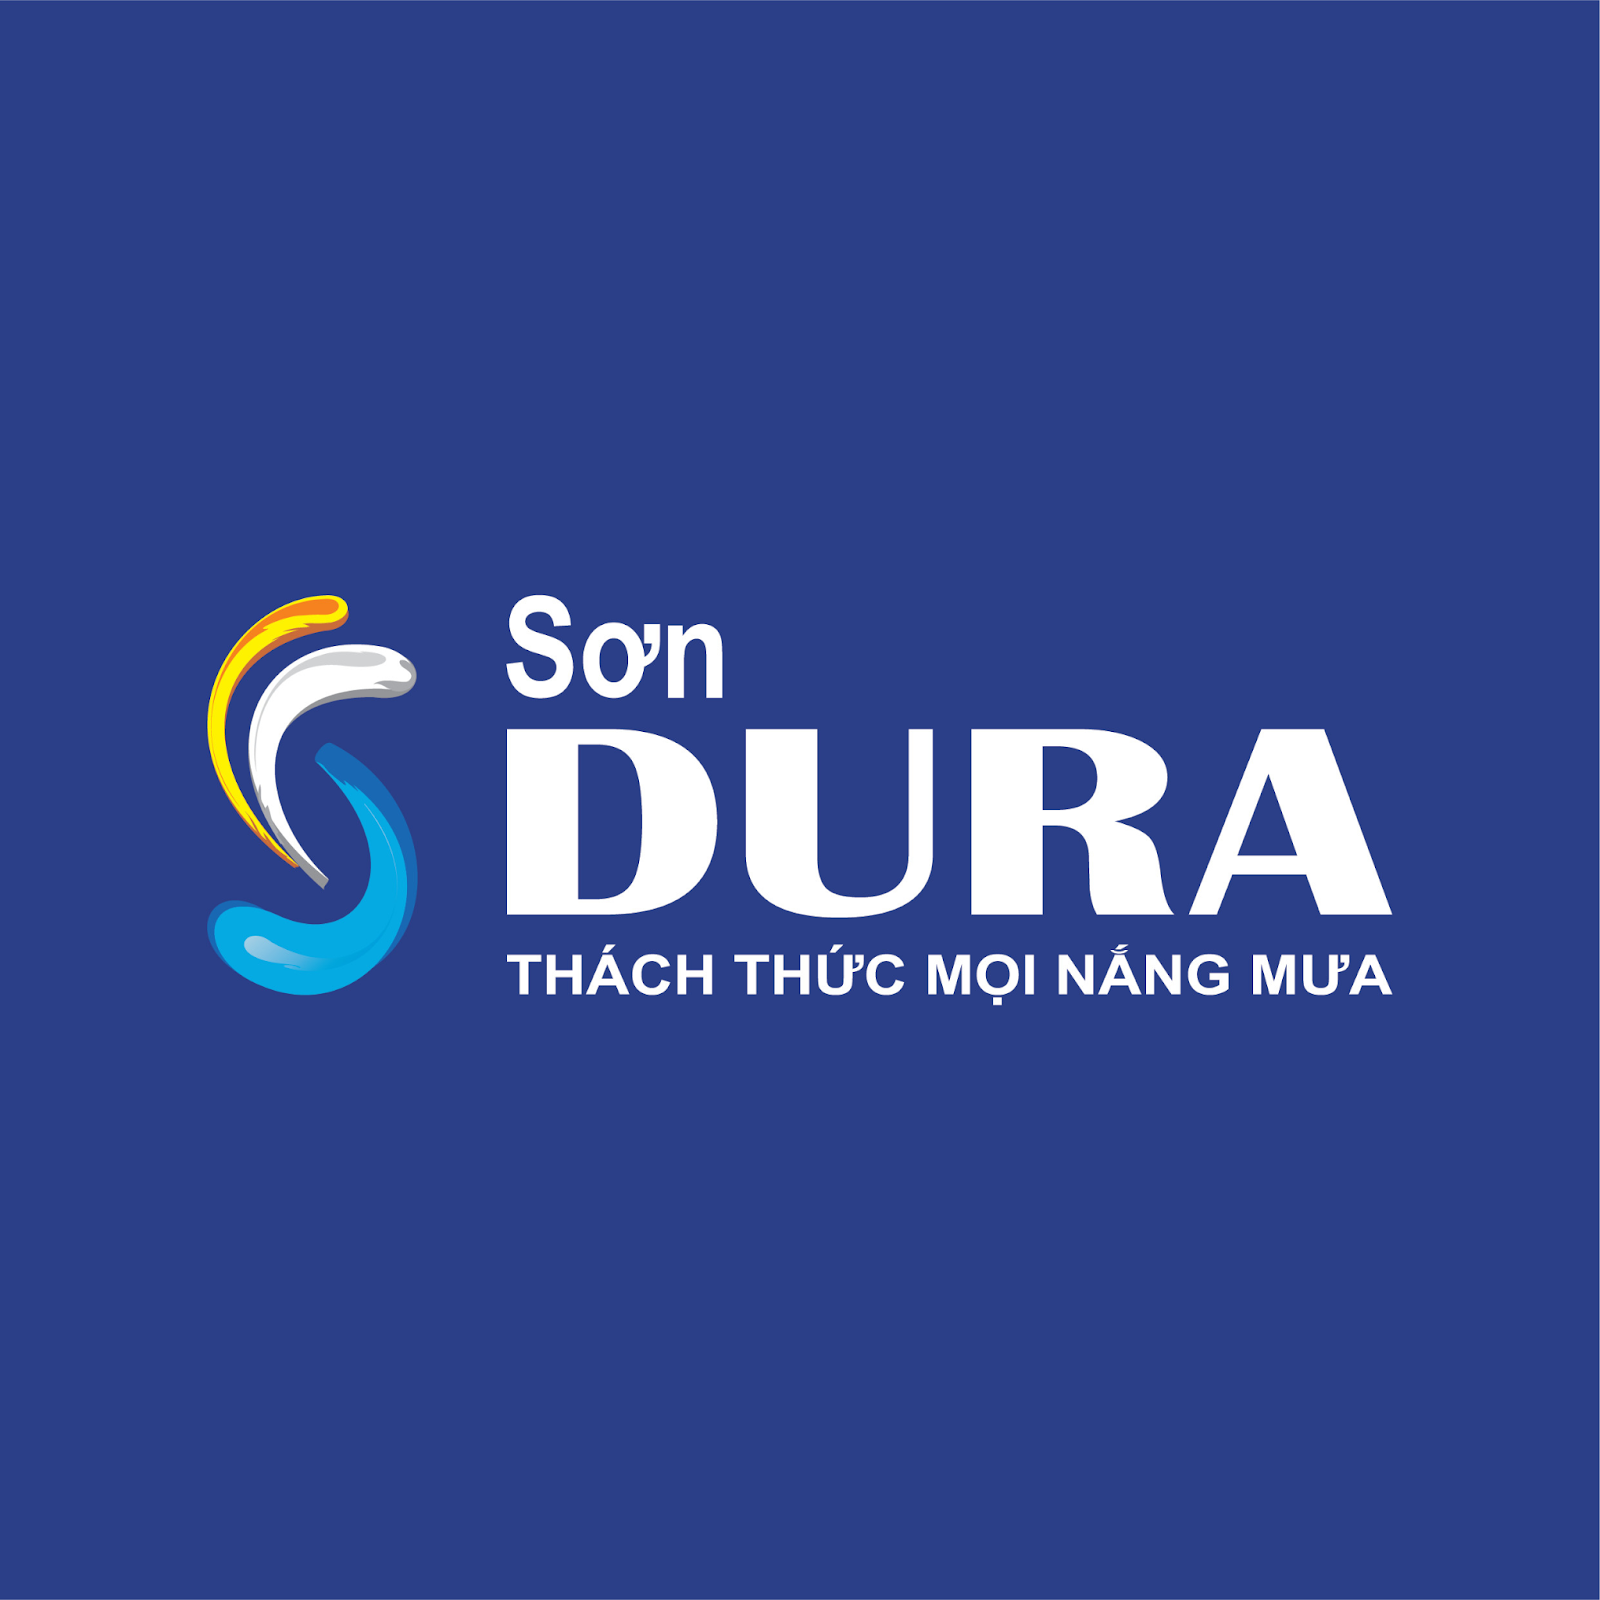 ý nghĩa logo Sơn Dura